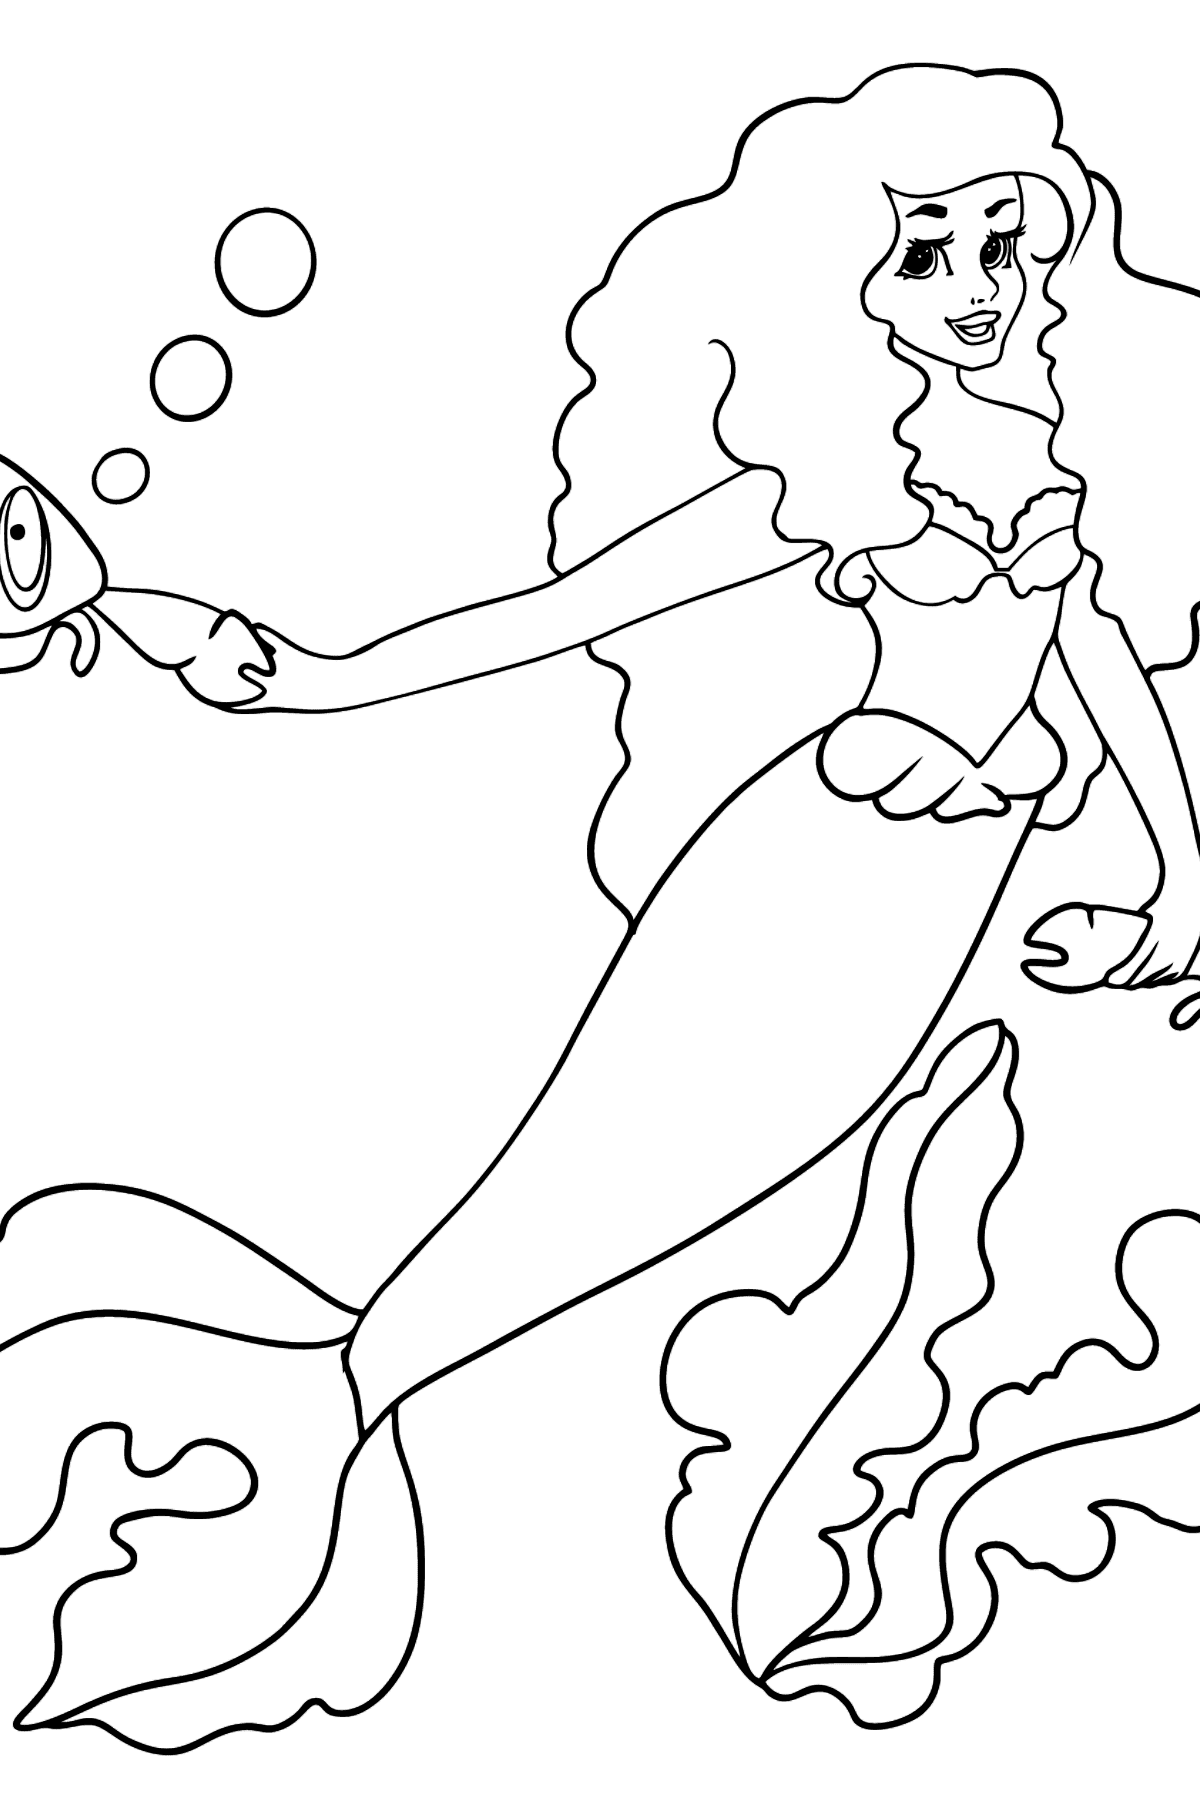 Desenho para colorir sereia e dois caranguejos - Imagens para Colorir para Crianças